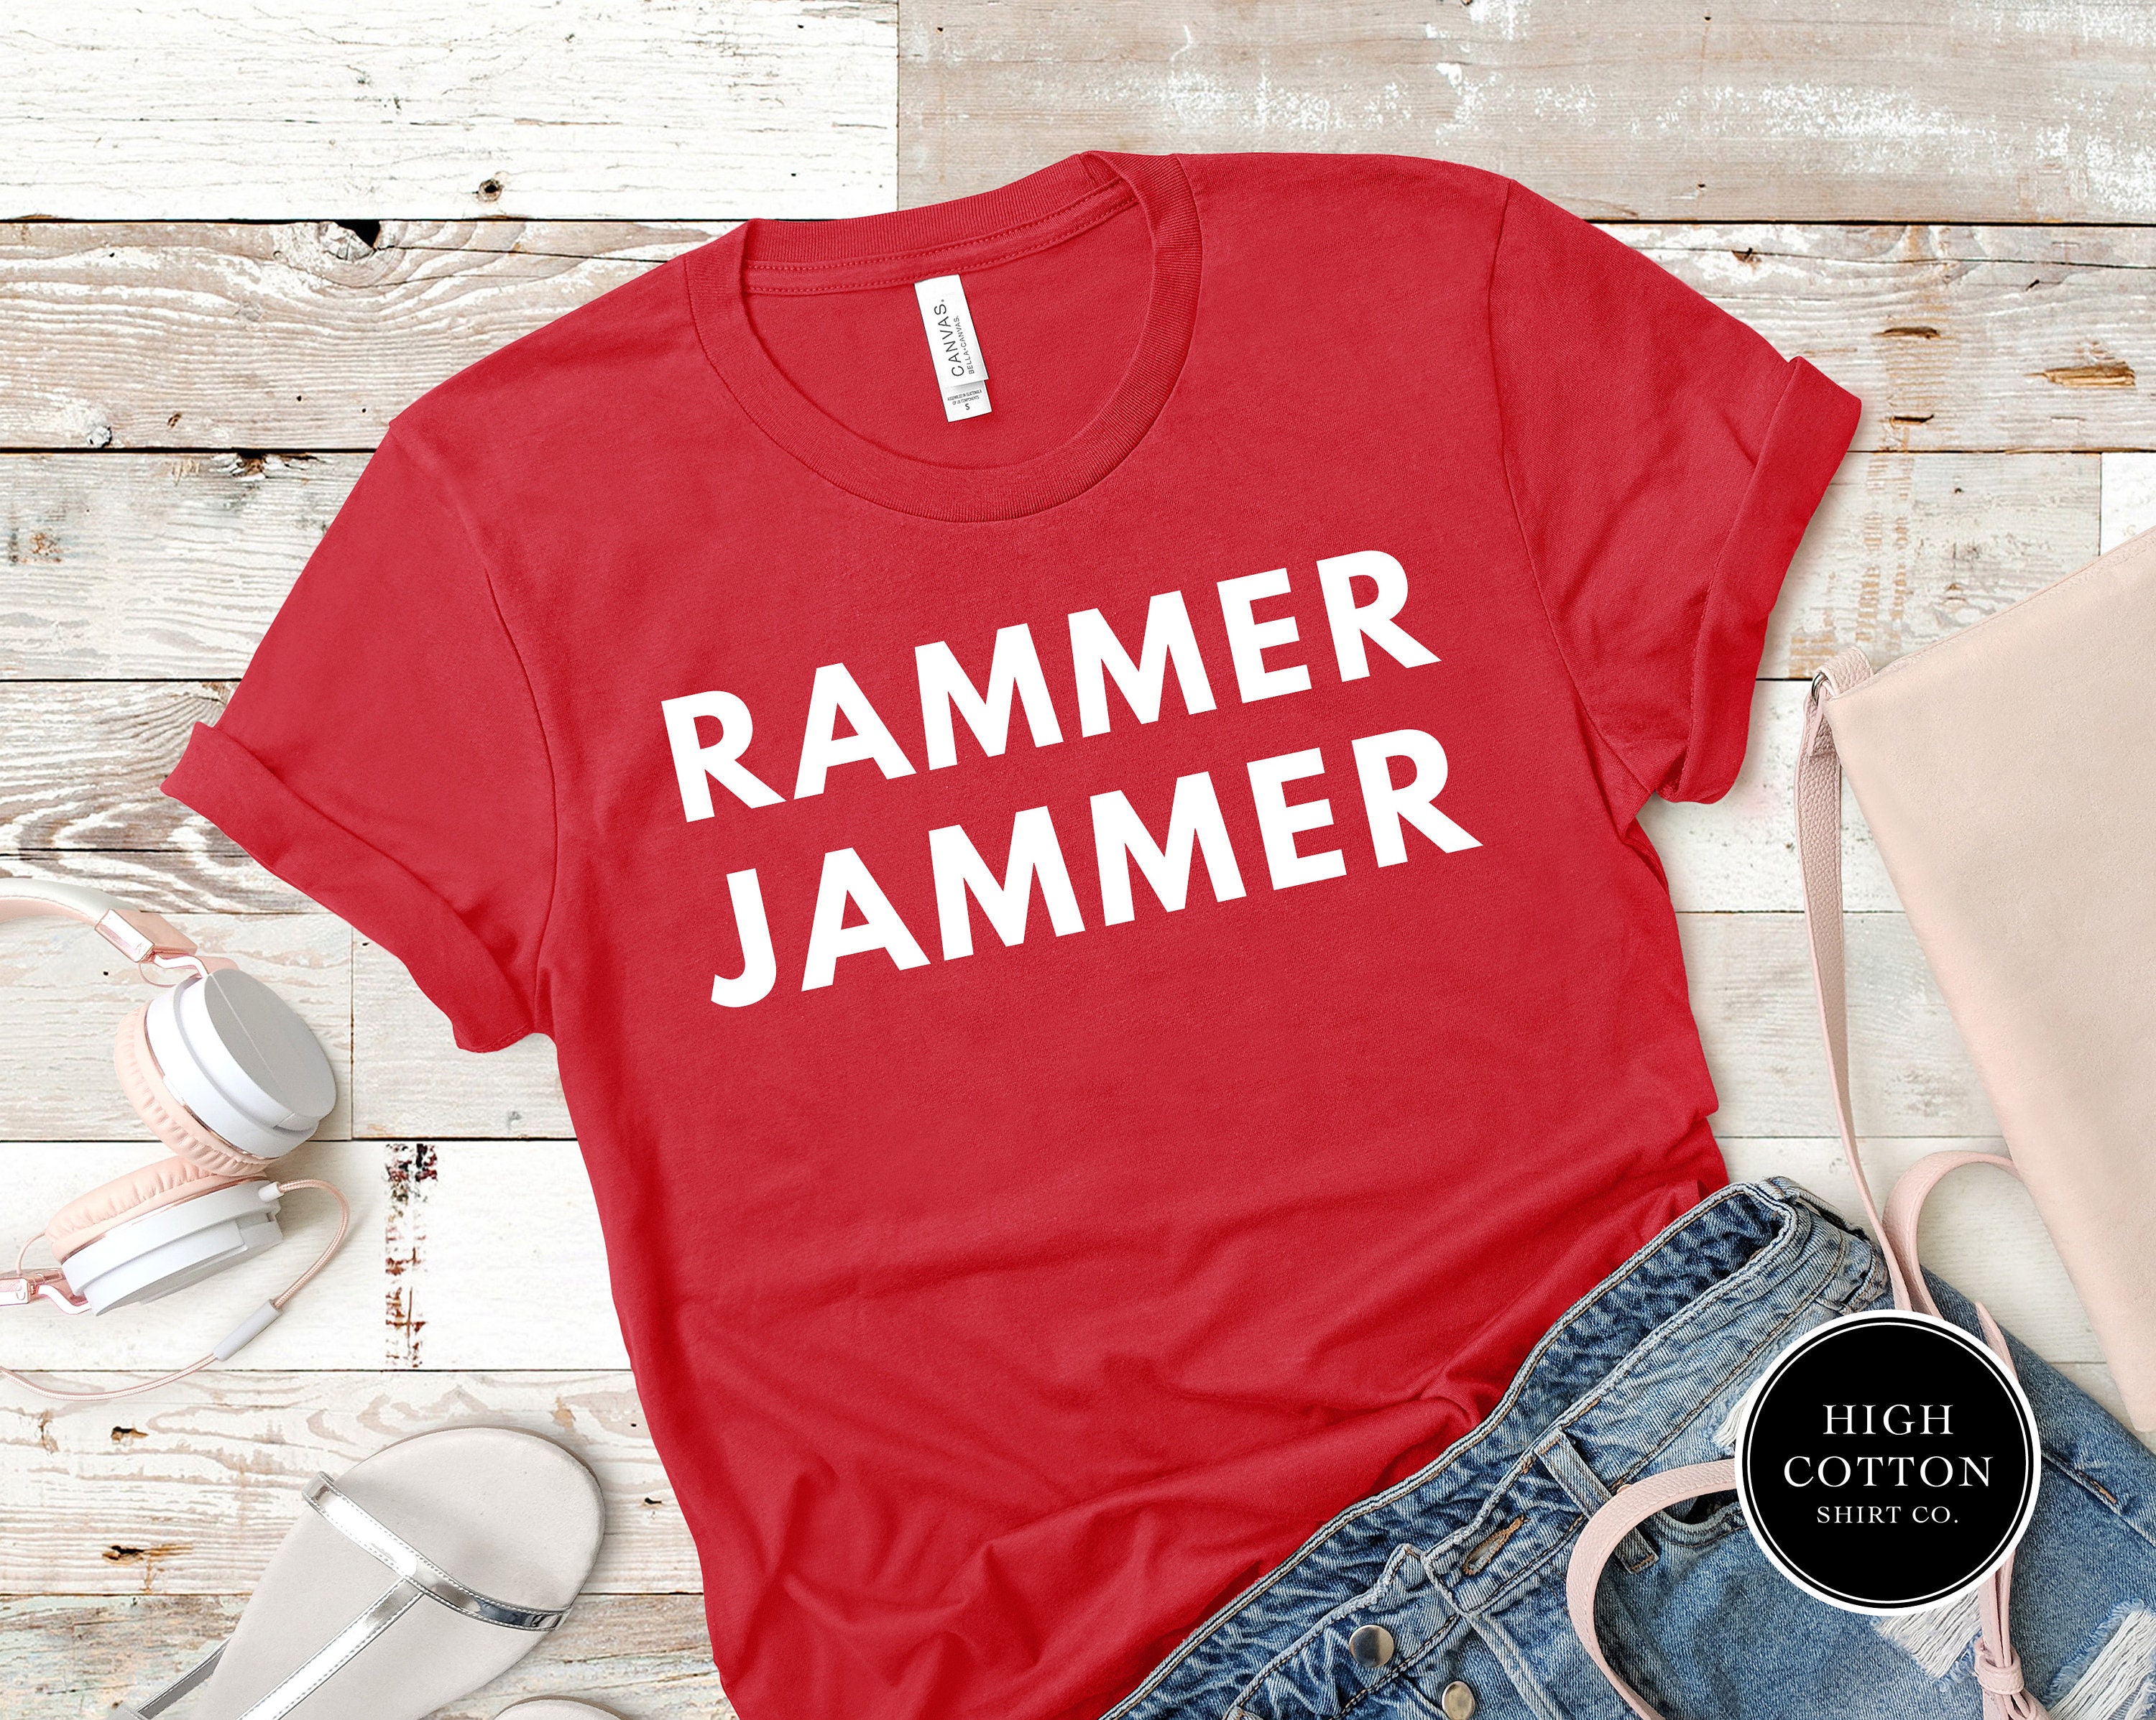 Rammer Jammer Shirt Alabama Alabama Football Alabama